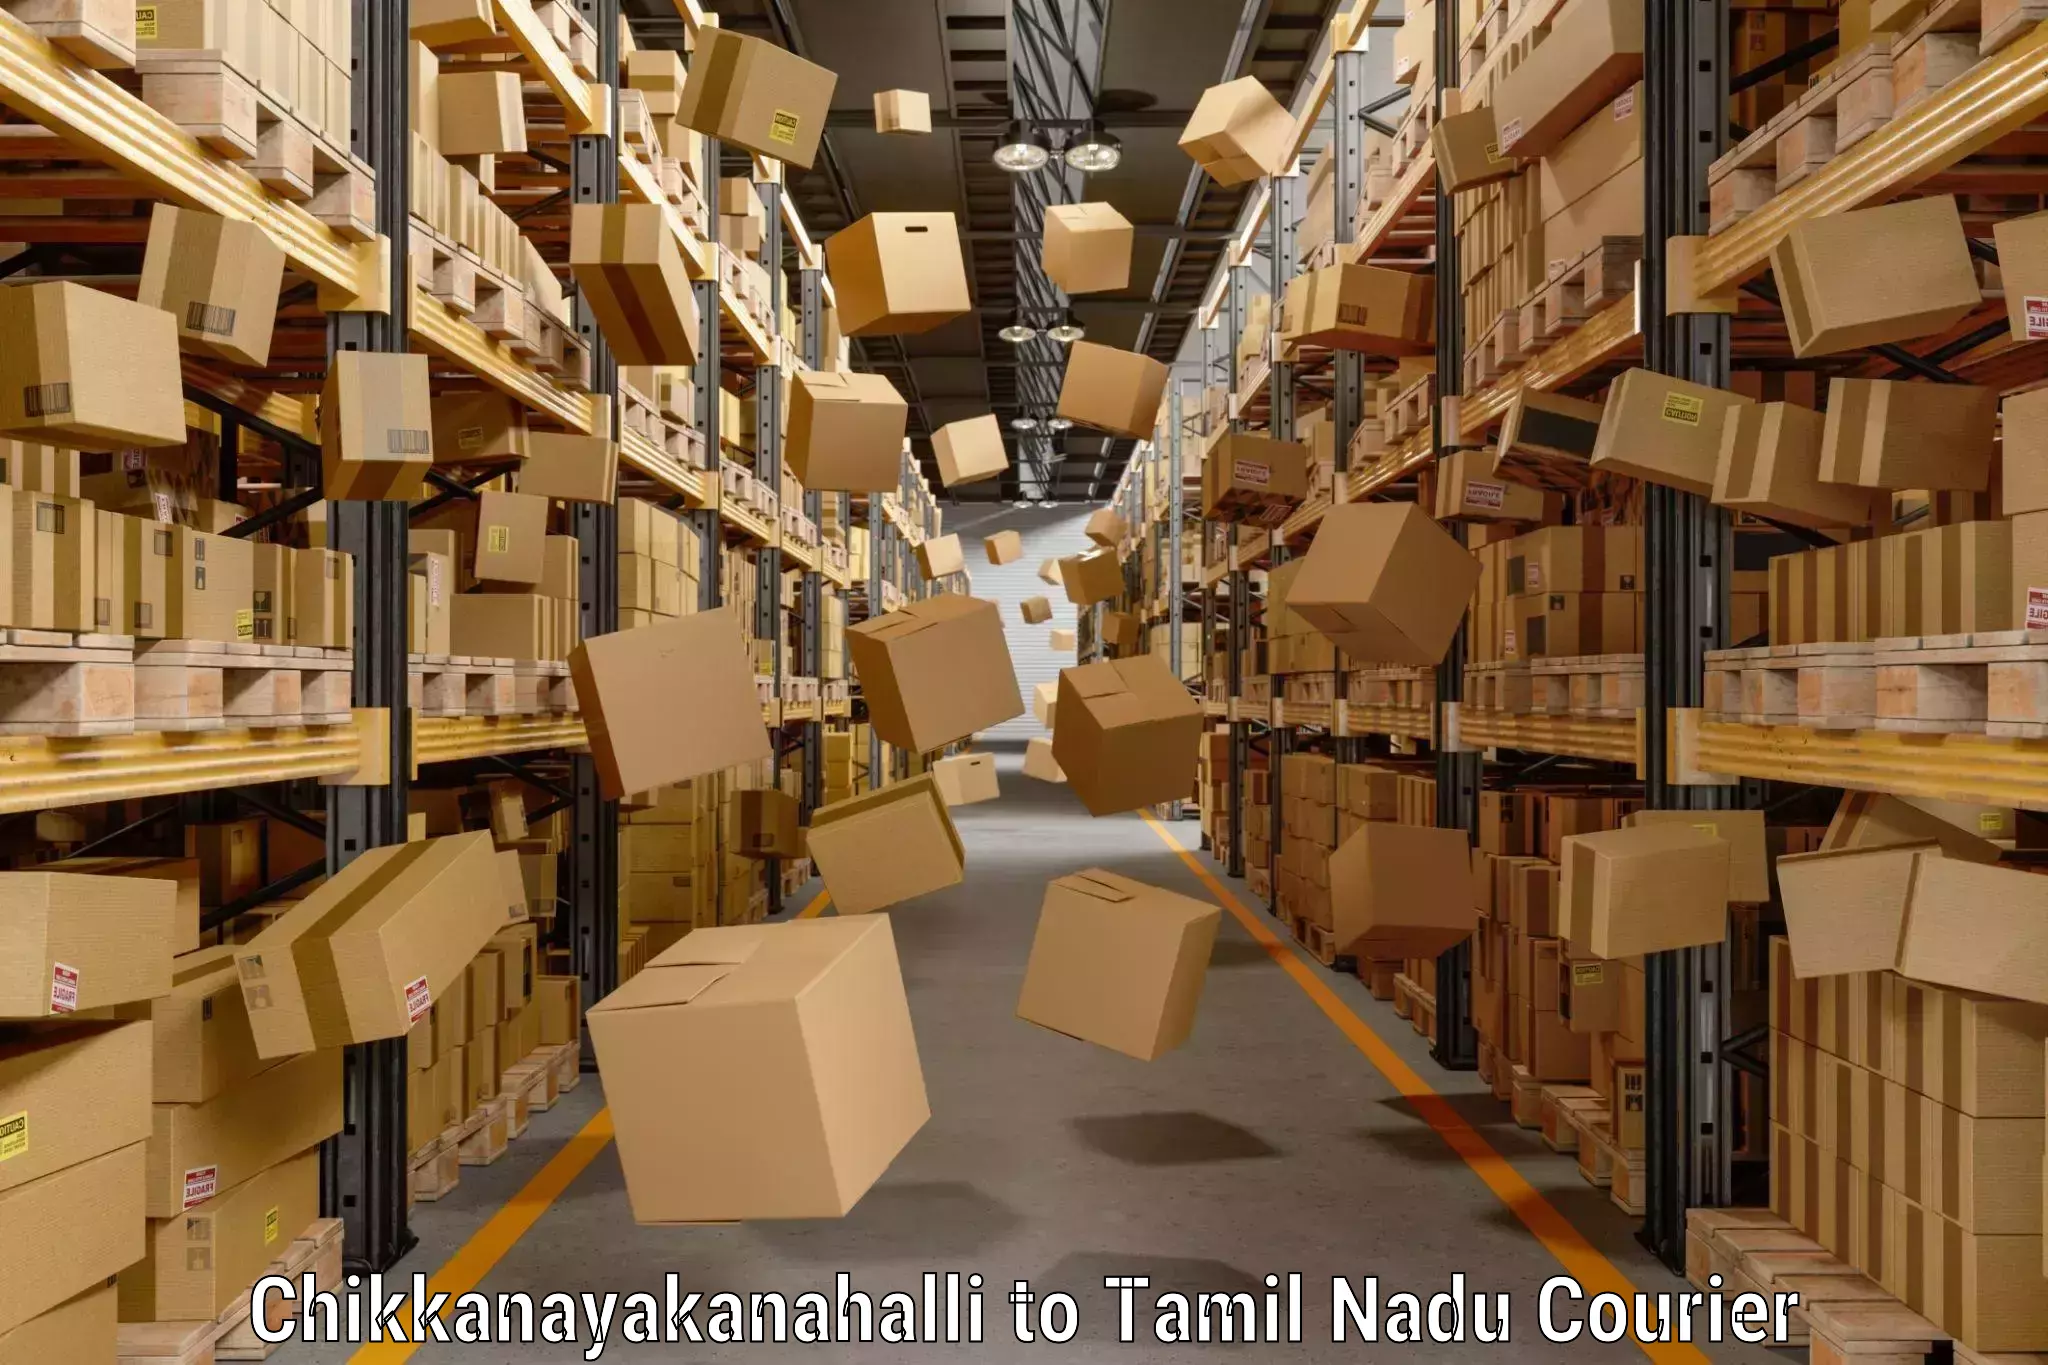 Luggage courier network Chikkanayakanahalli to Tamil Nadu